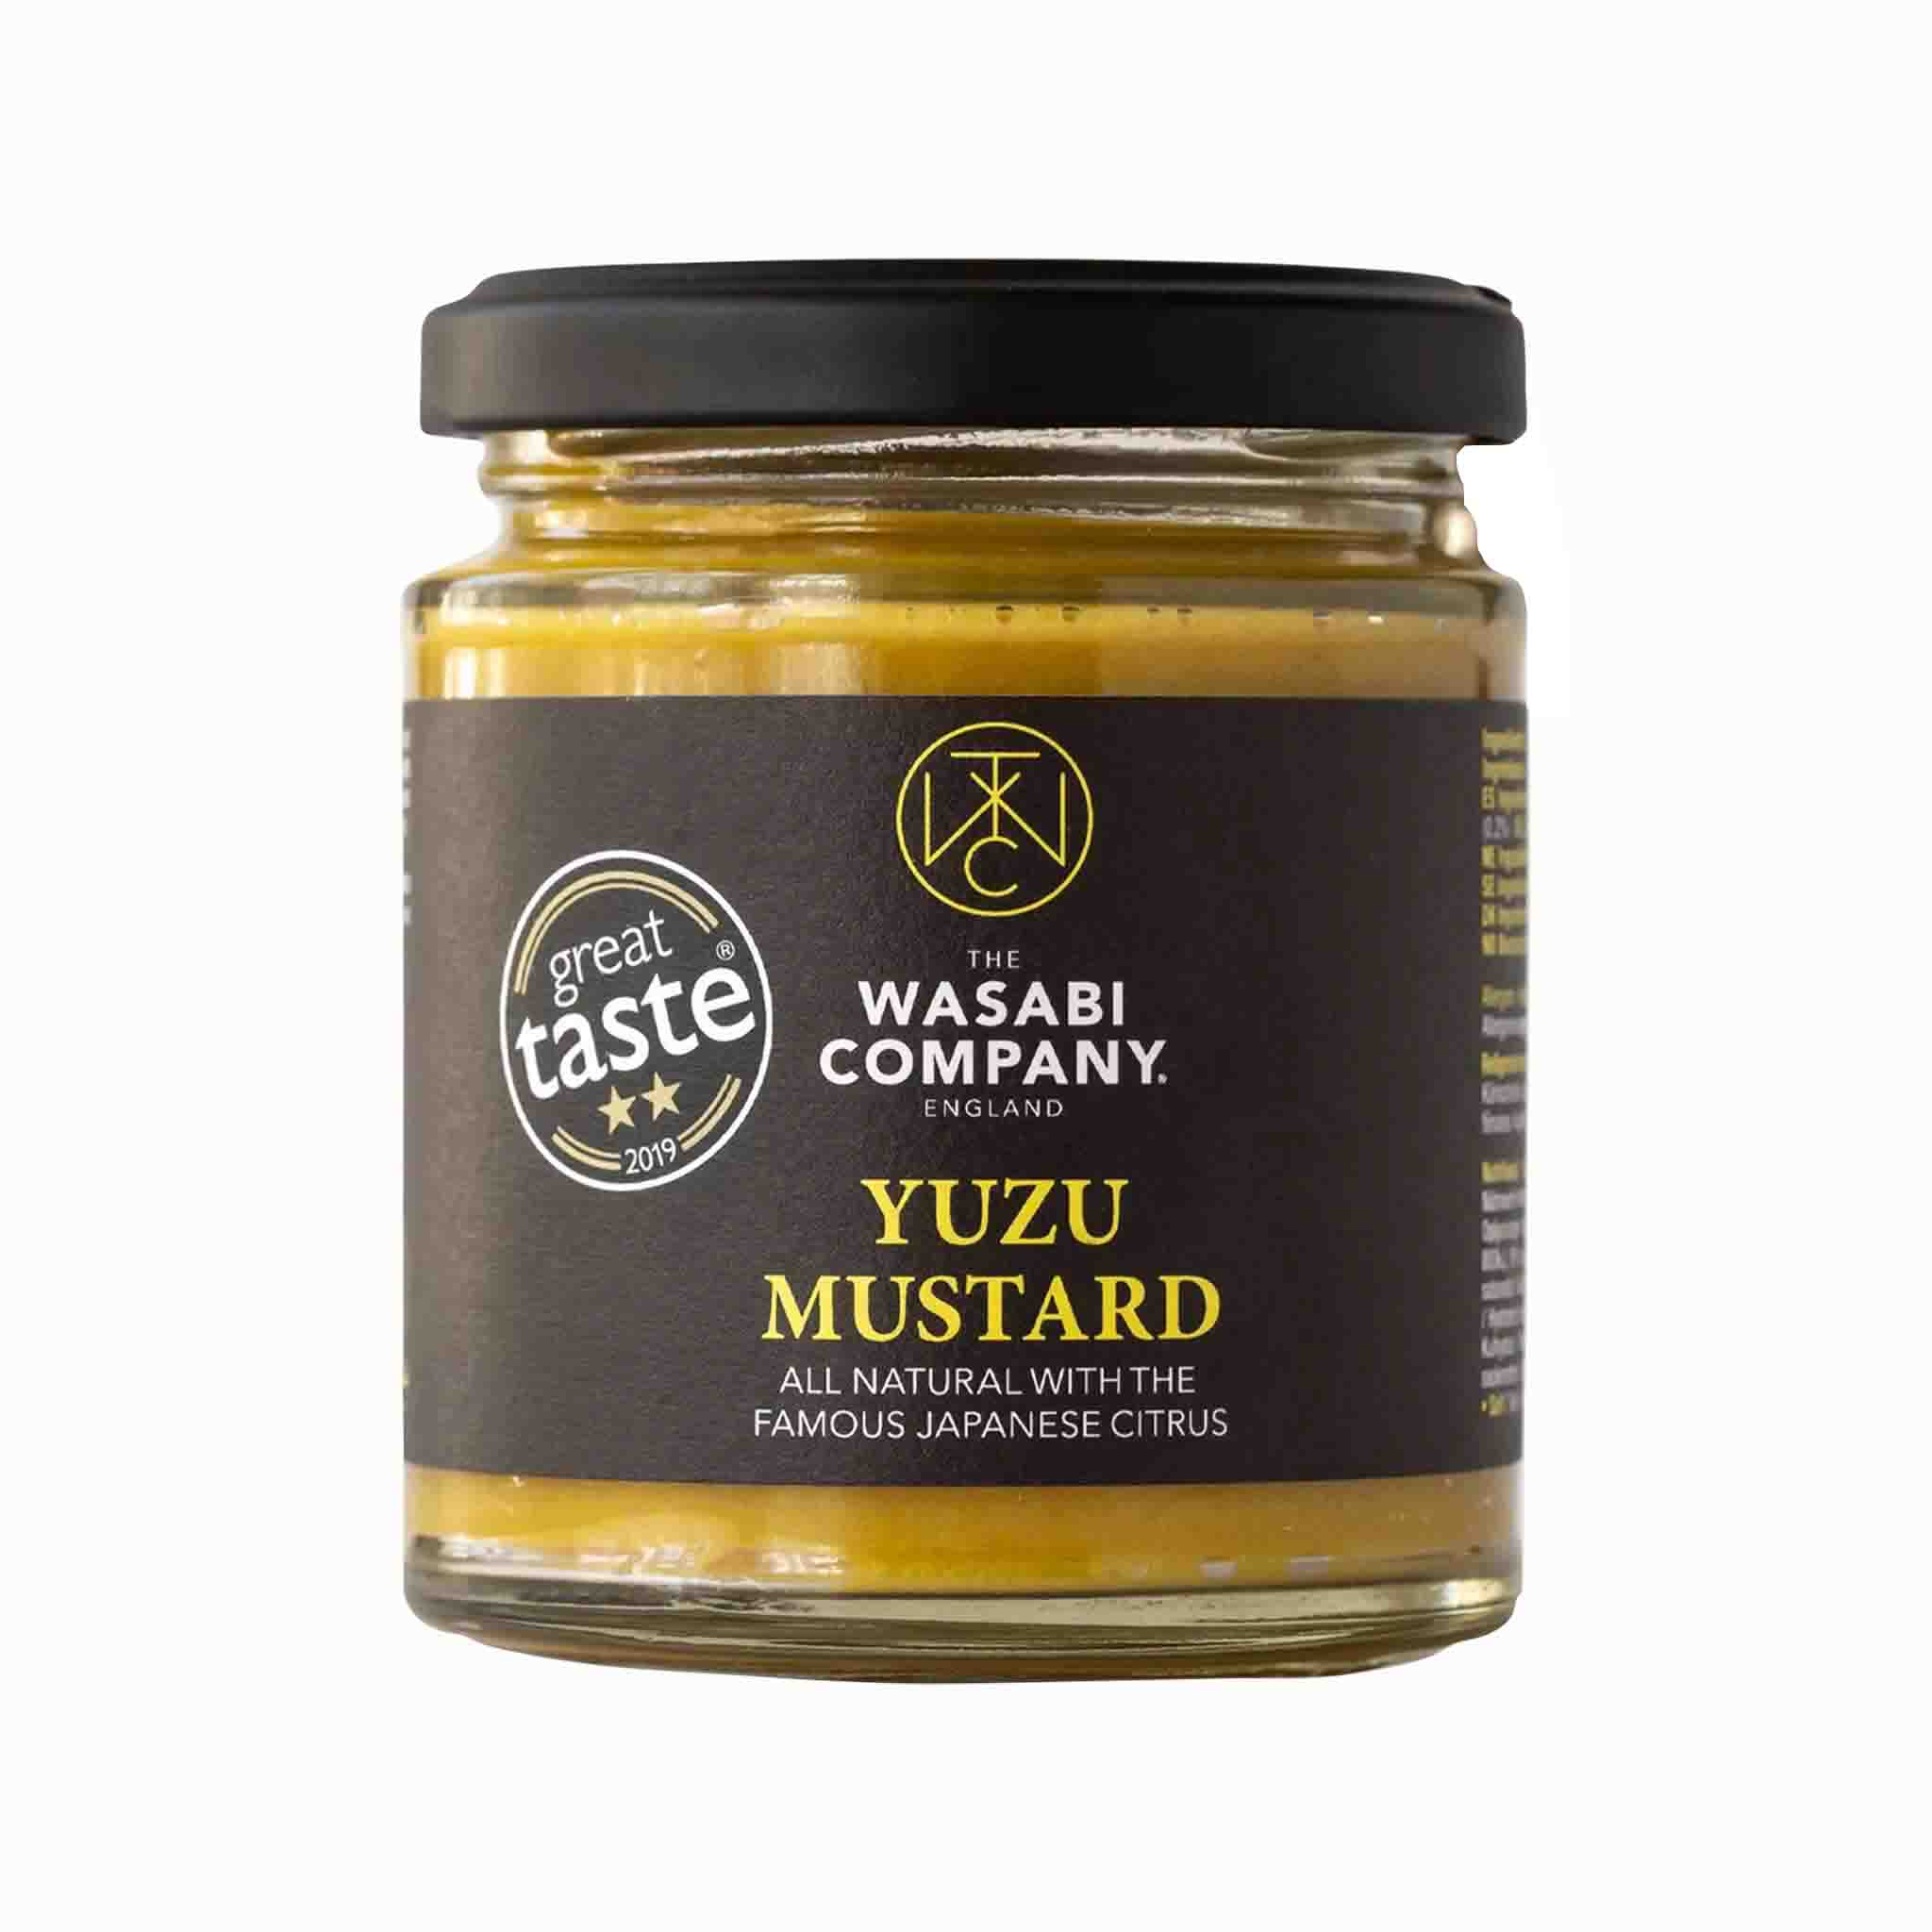 Wasabi Company Yuzu Mustard in a Glass Jar